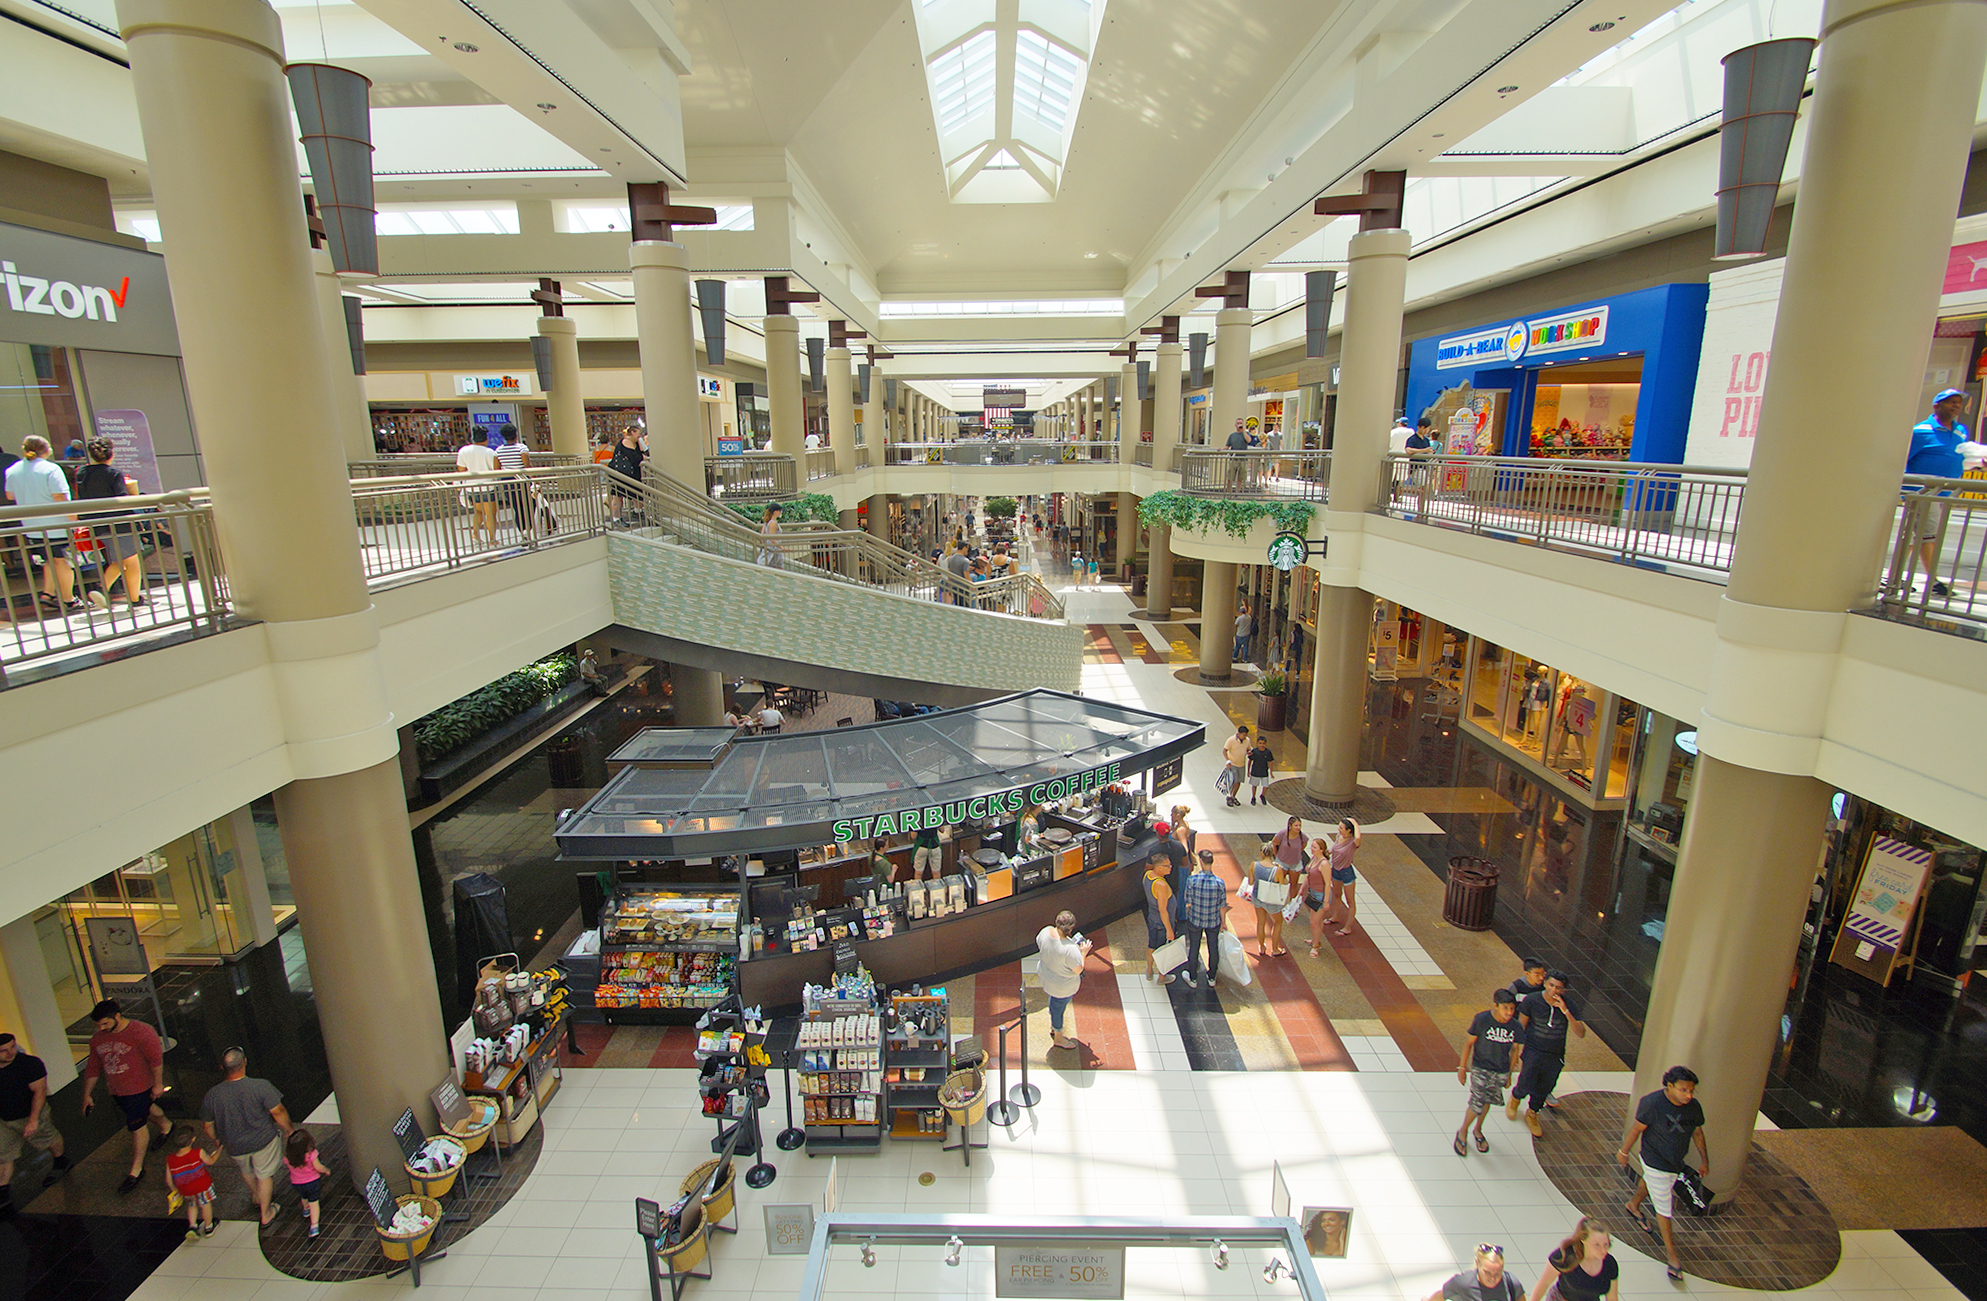 Walden Galleria Mall - food court - Picture of Walden Galleria